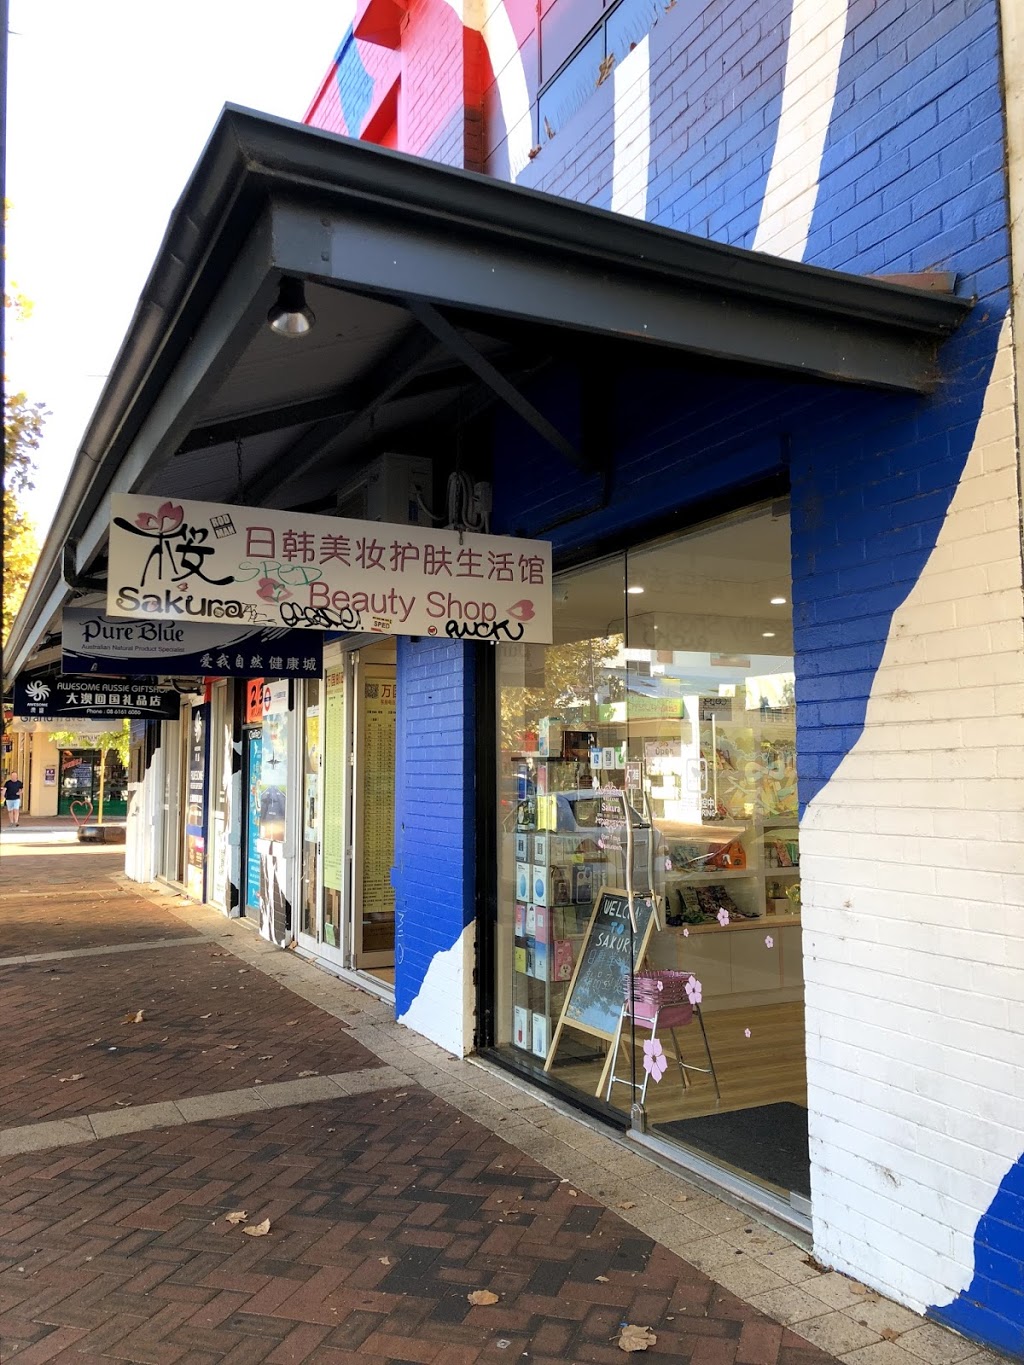 Sakura Beauty Shop | store | 1/369 William St, Perth WA 6000, Australia